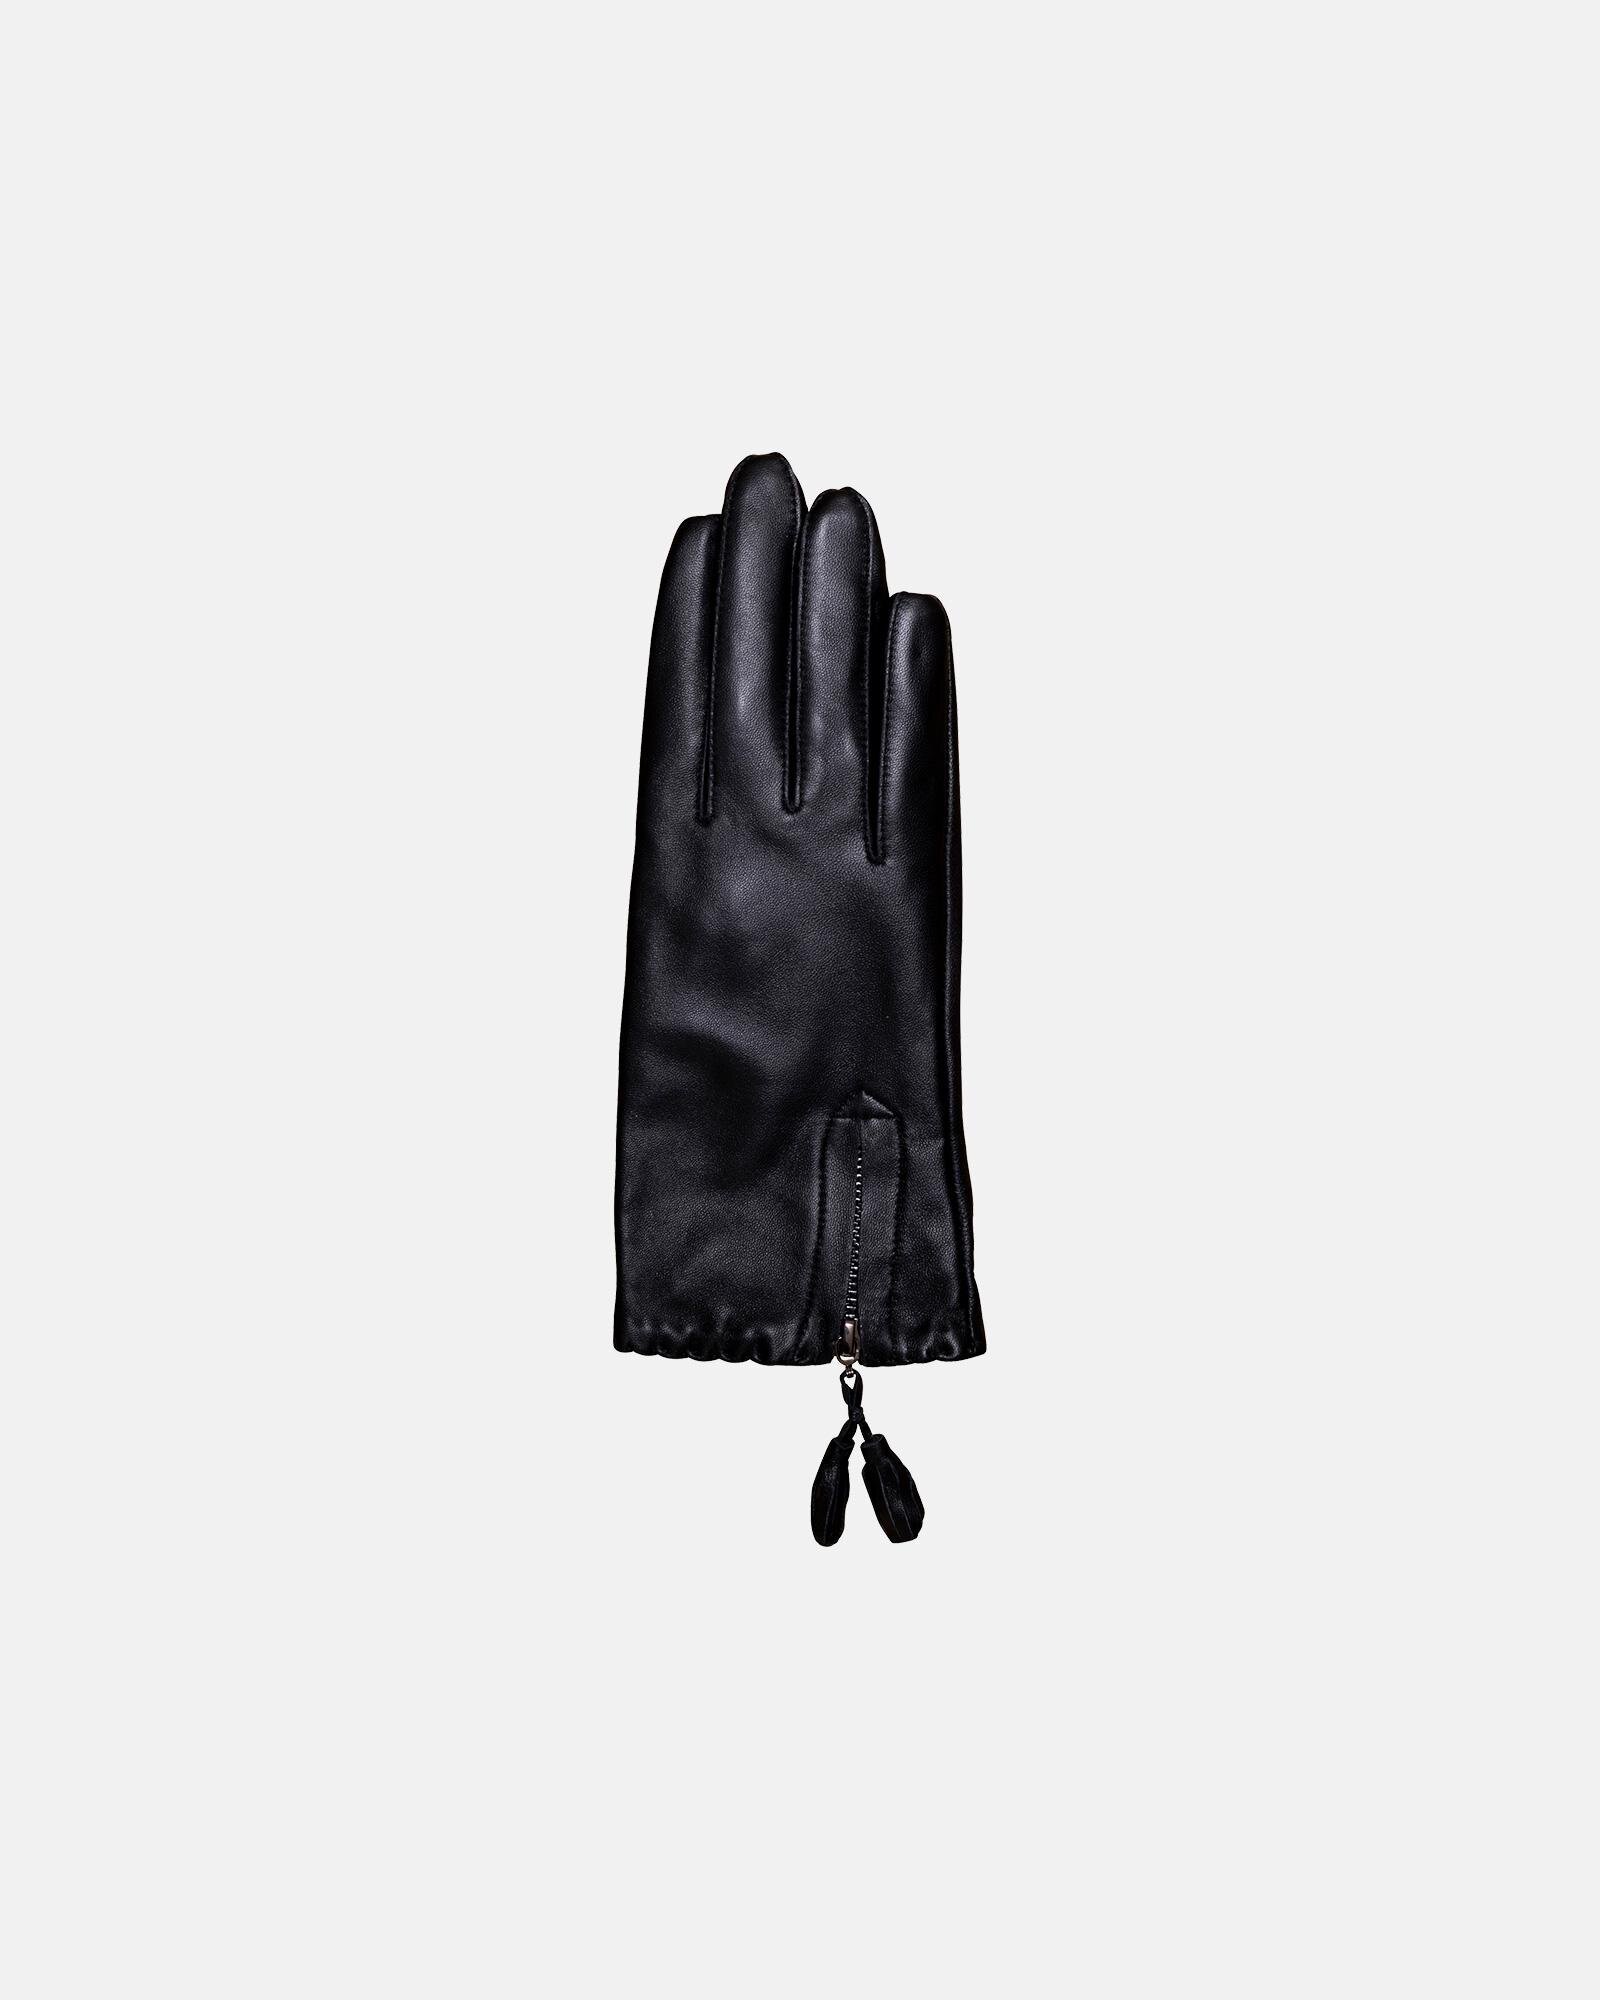 klint parkere stille Skind-handsker med glidelås | læder | sort fra Decoy - Køb hos Intimo